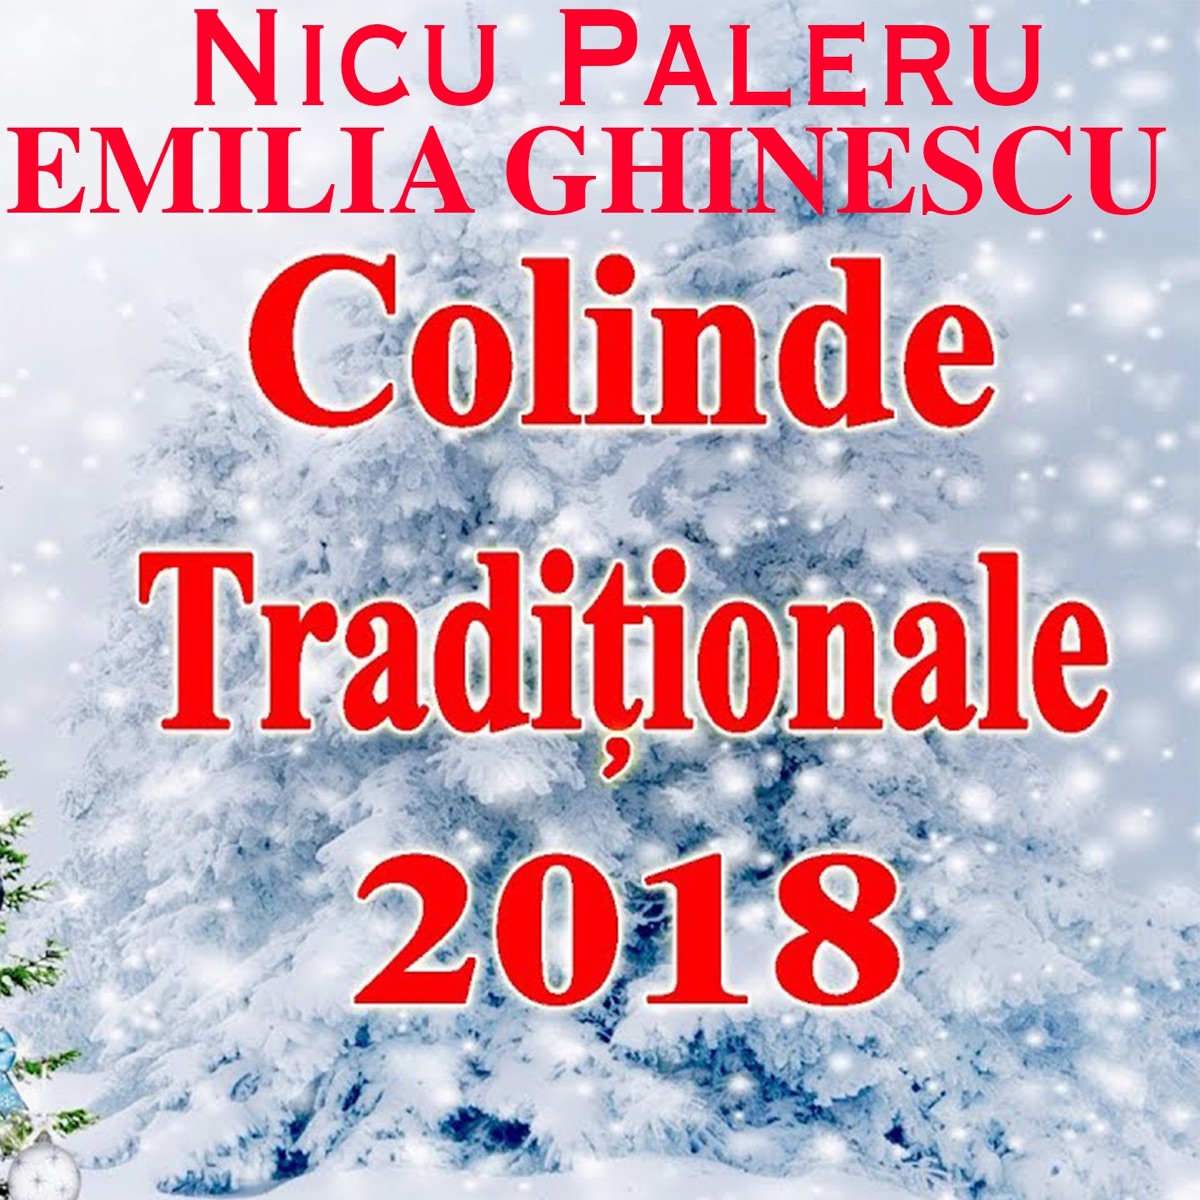 Nicu Paleru Best Hits, Vol. 4 by Nicu Paleru on Apple Music